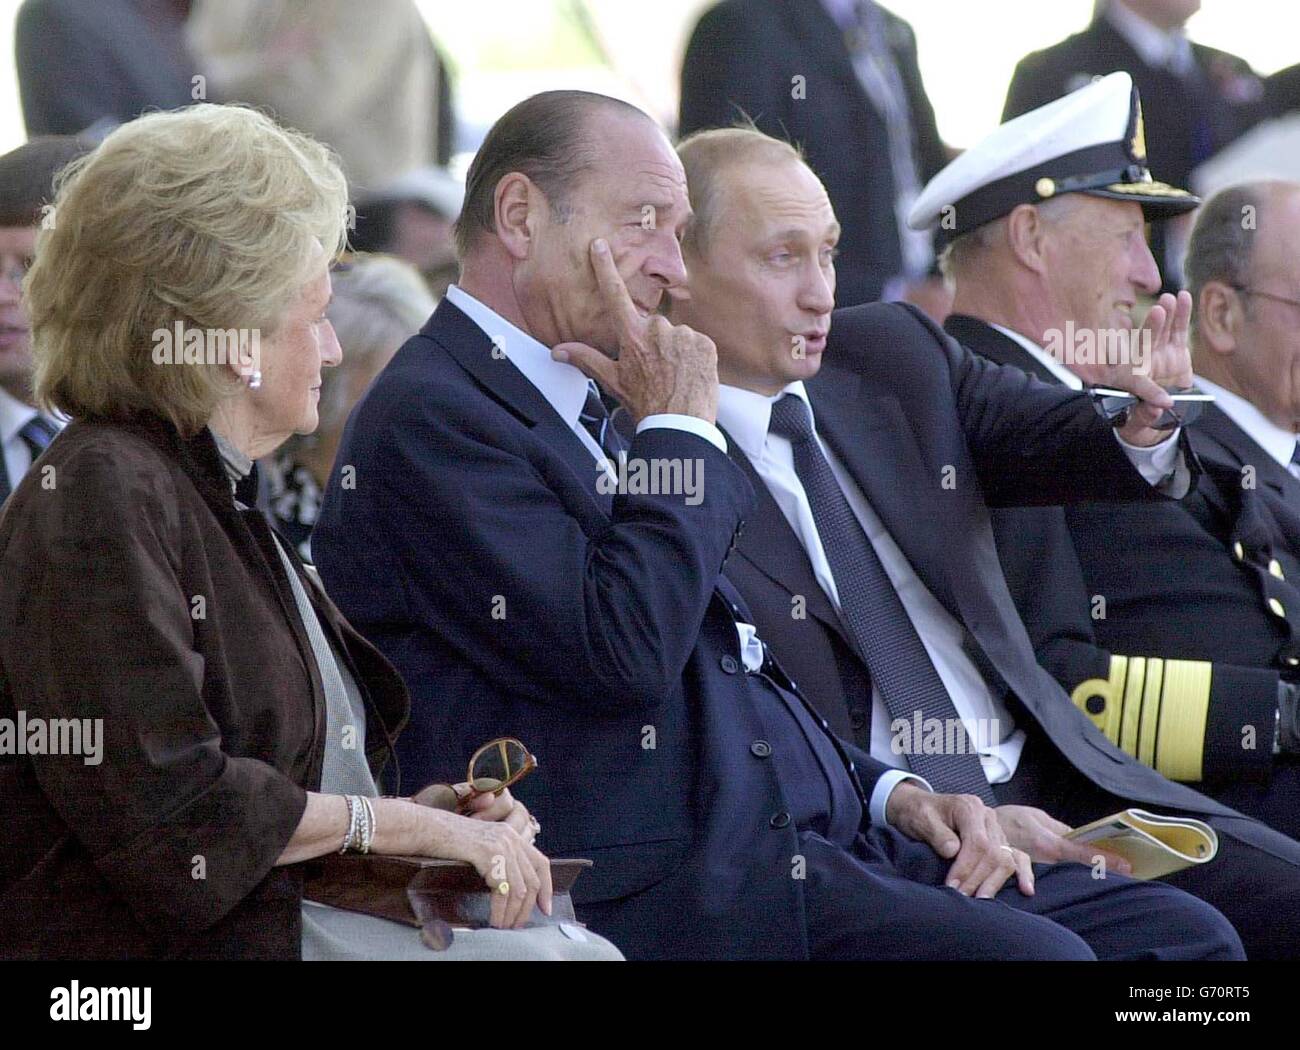 Il presidente francese Jacques Chirac è affiancato dalla moglie Bernadette e dal presidente russo Vladimir Putin durante la cerimonia internazionale ad Arromanches, che celebra il 60° anniversario degli sbarchi in Normandia. Foto Stock